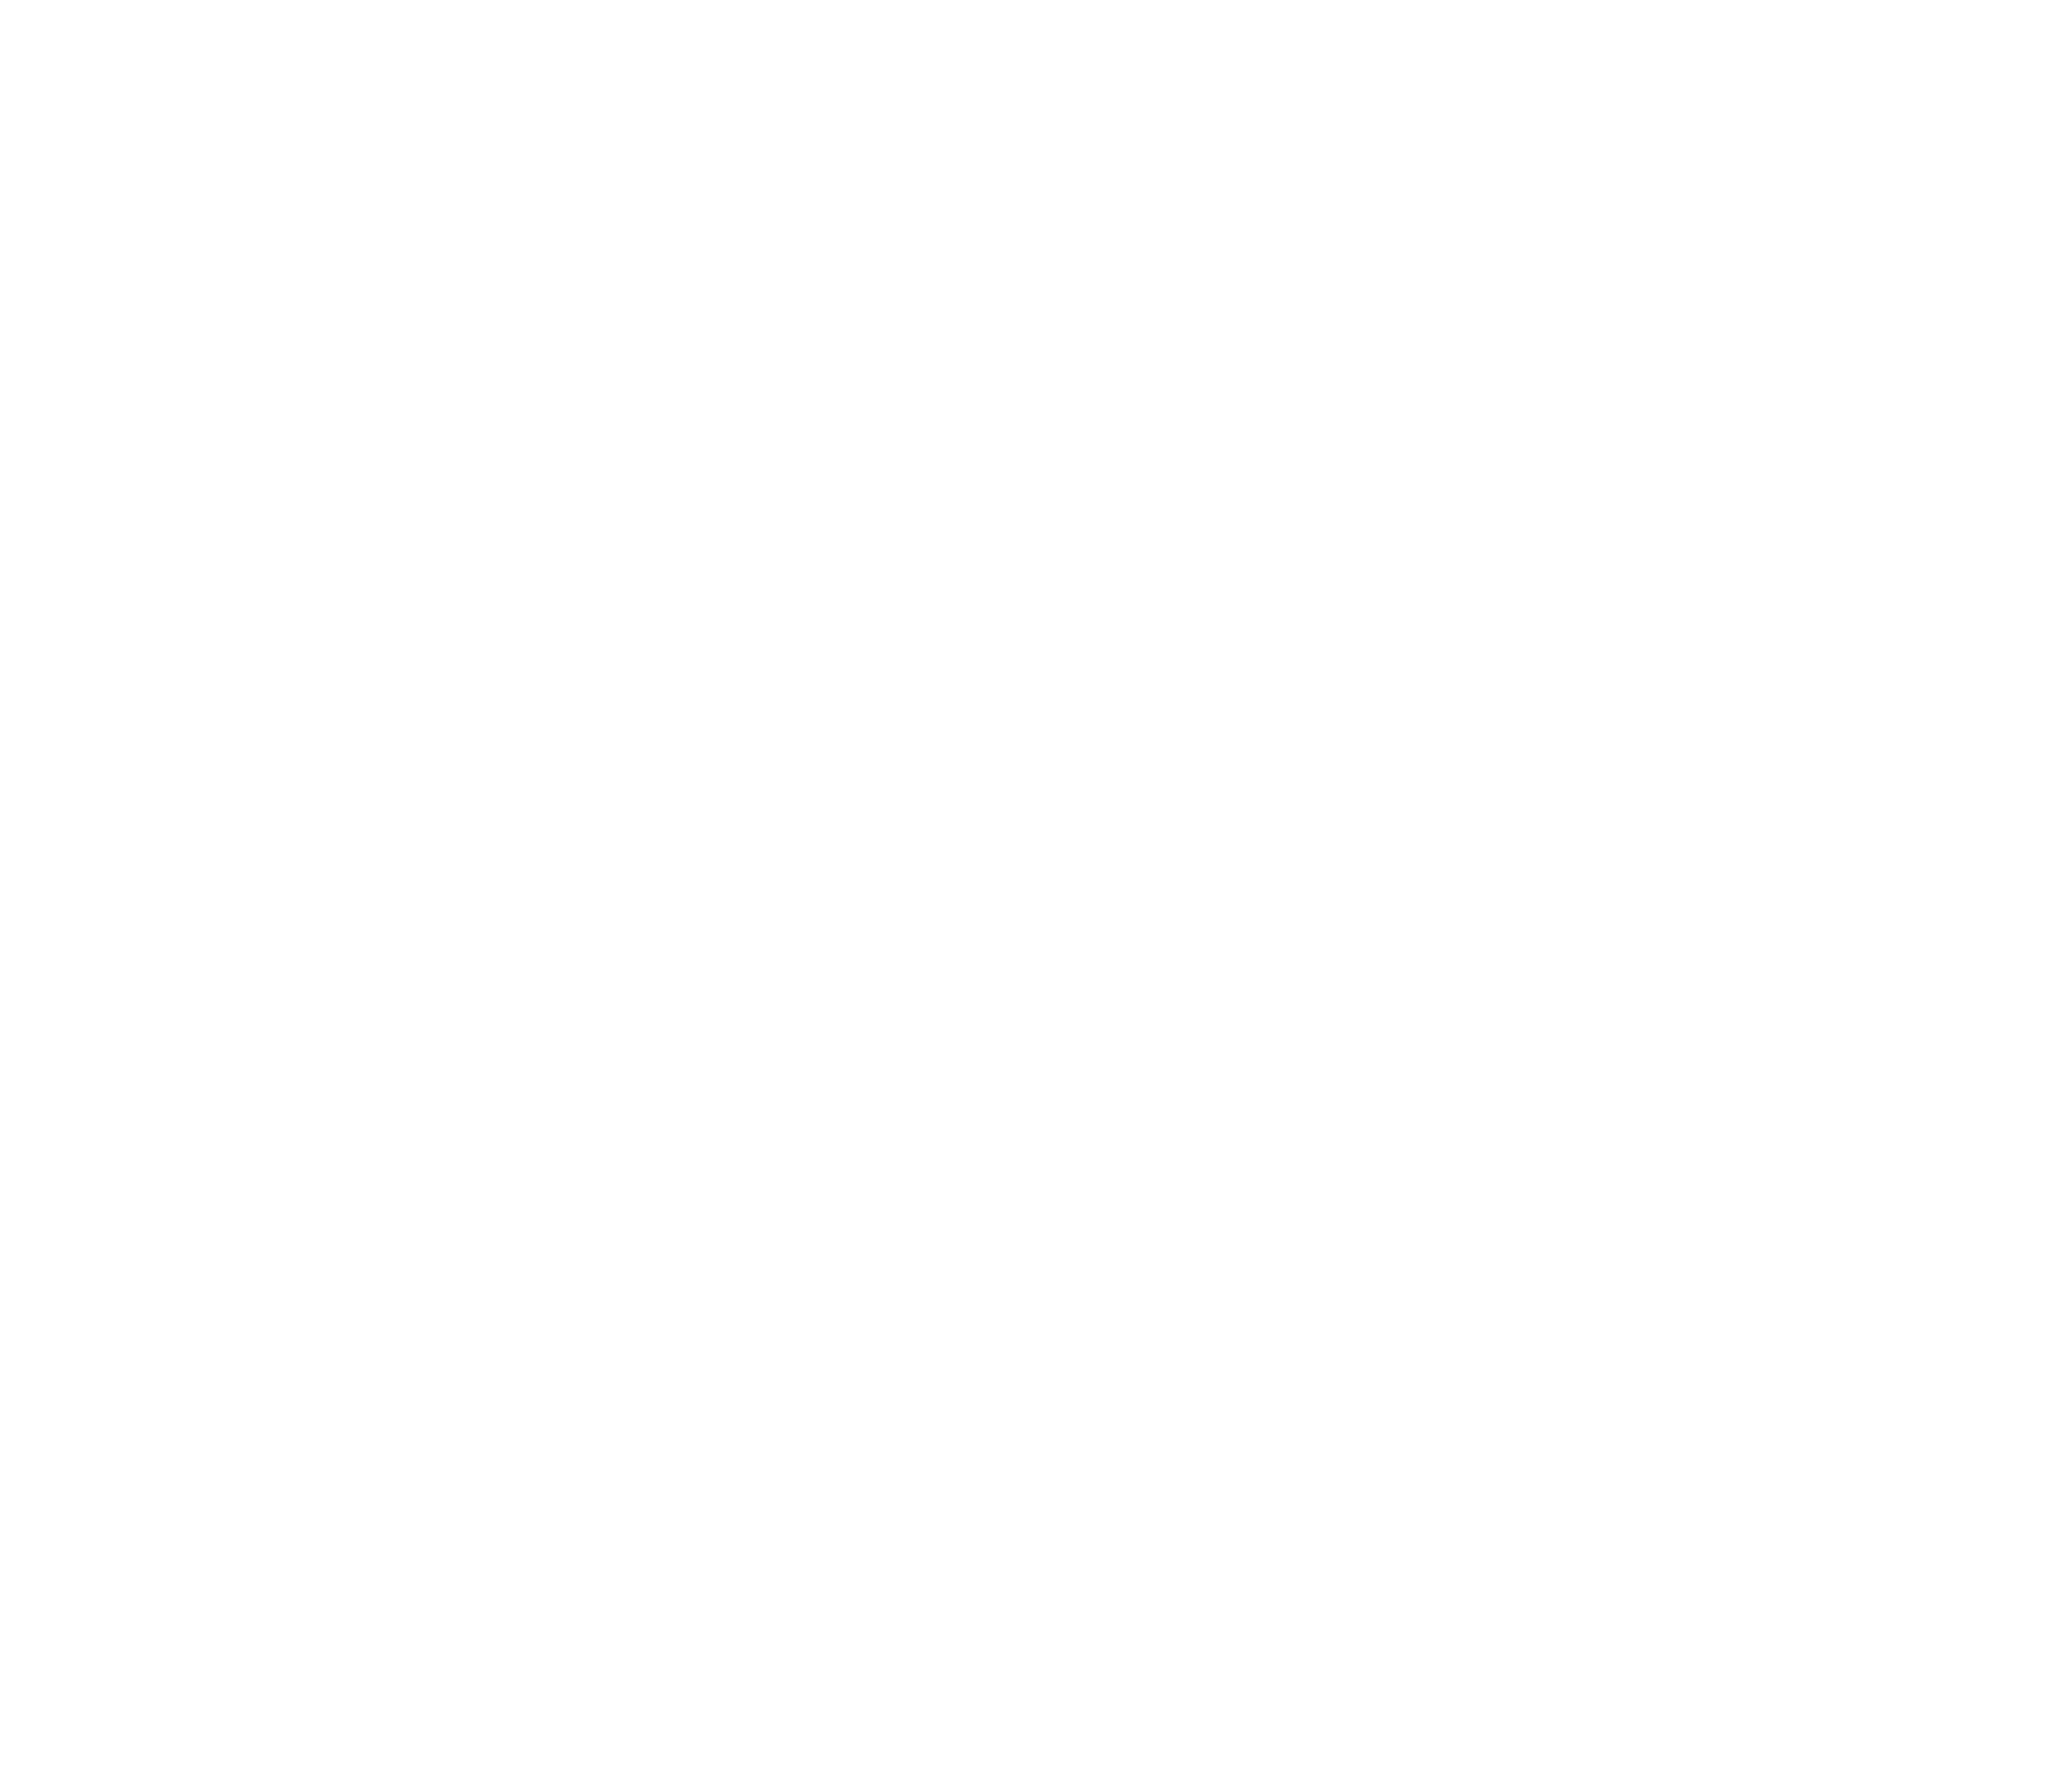 The 550 Market logo